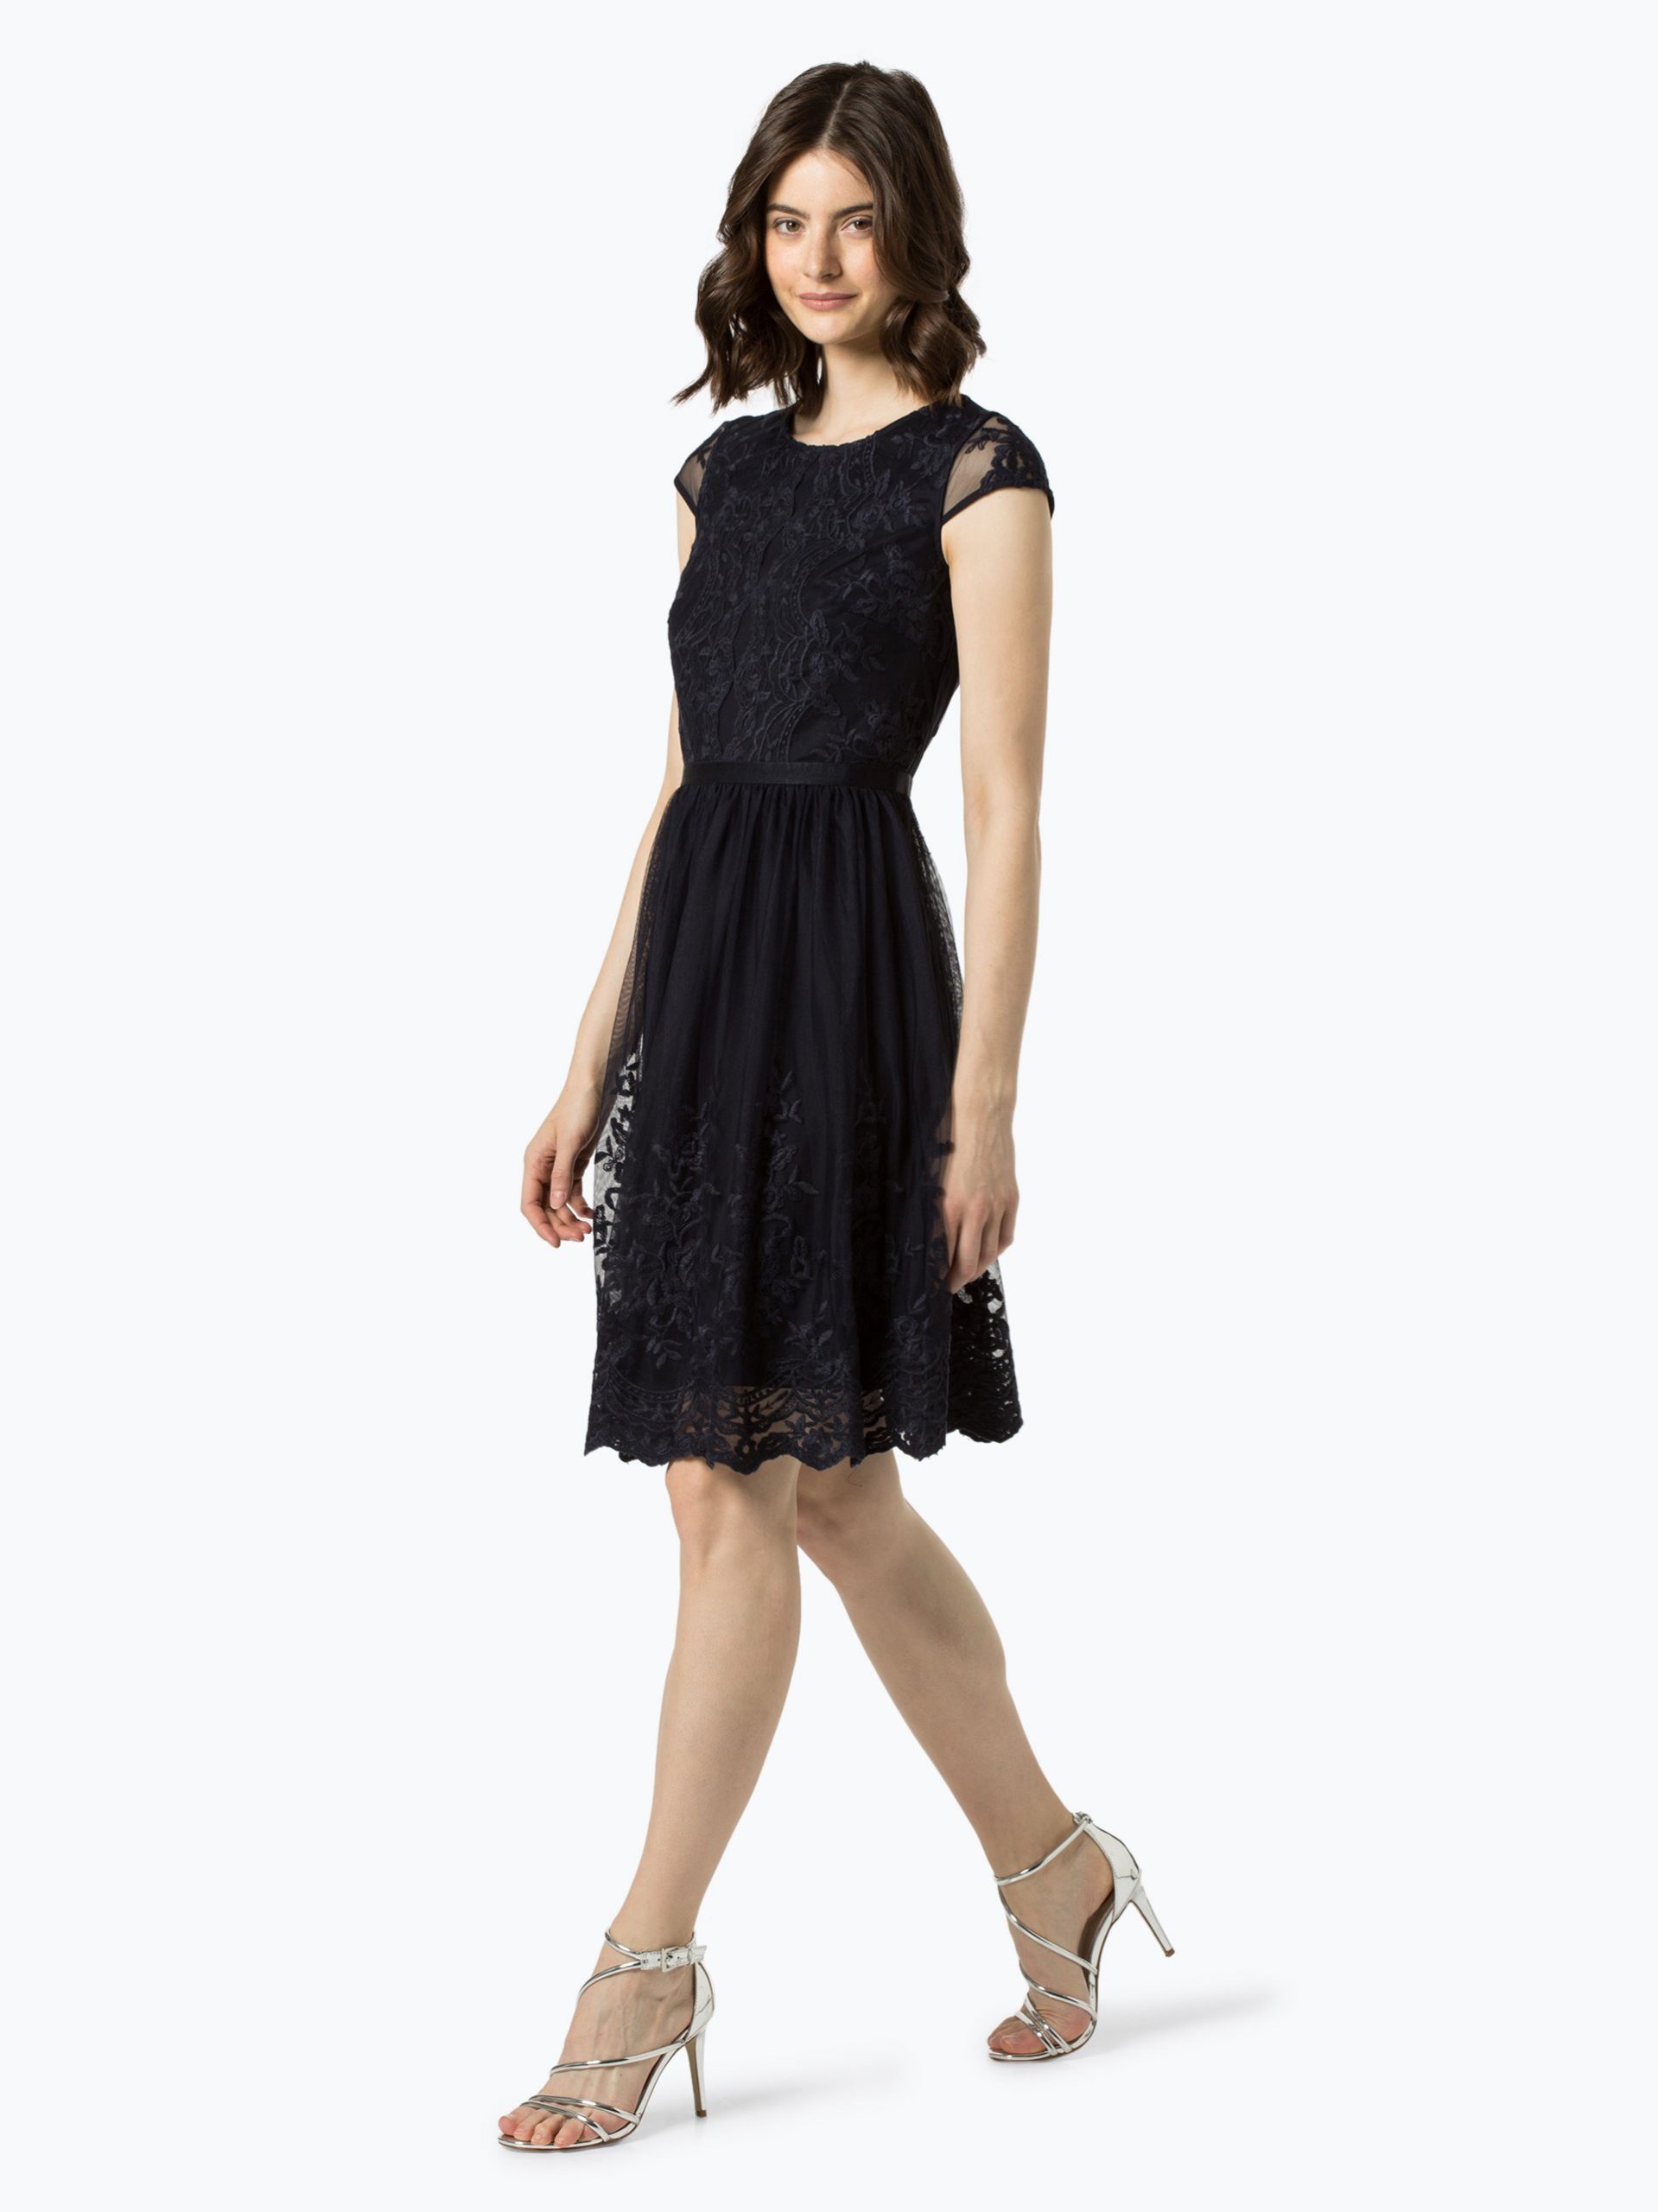 Esprit Collection Damen Kleid Online Kaufen  Vangraaf